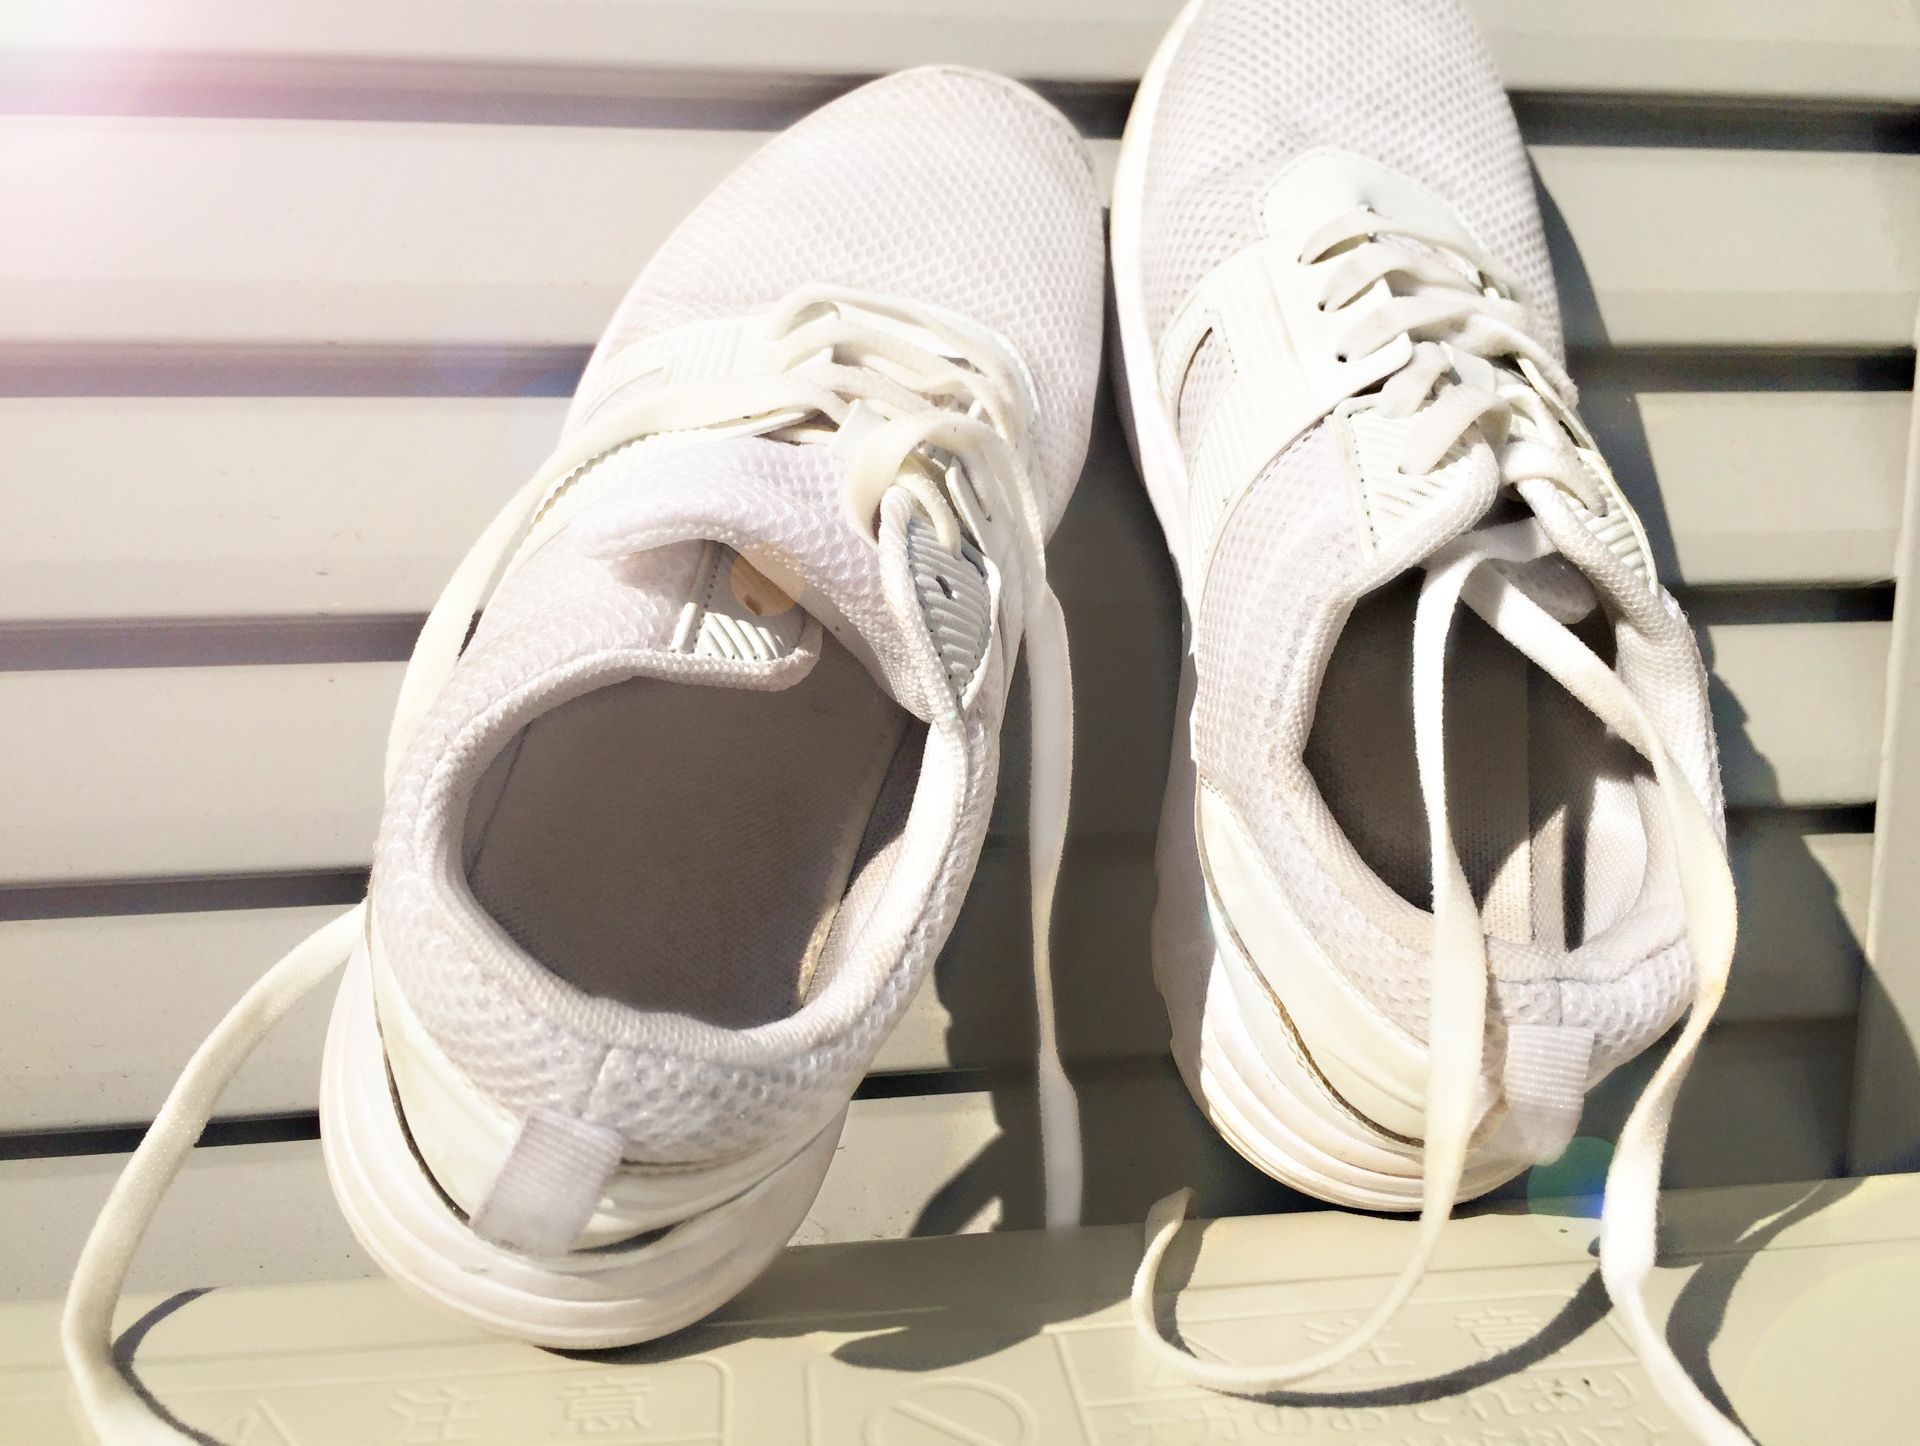 靴用洗剤の代用にオススメなものとキレイに汚れを落とすコツ